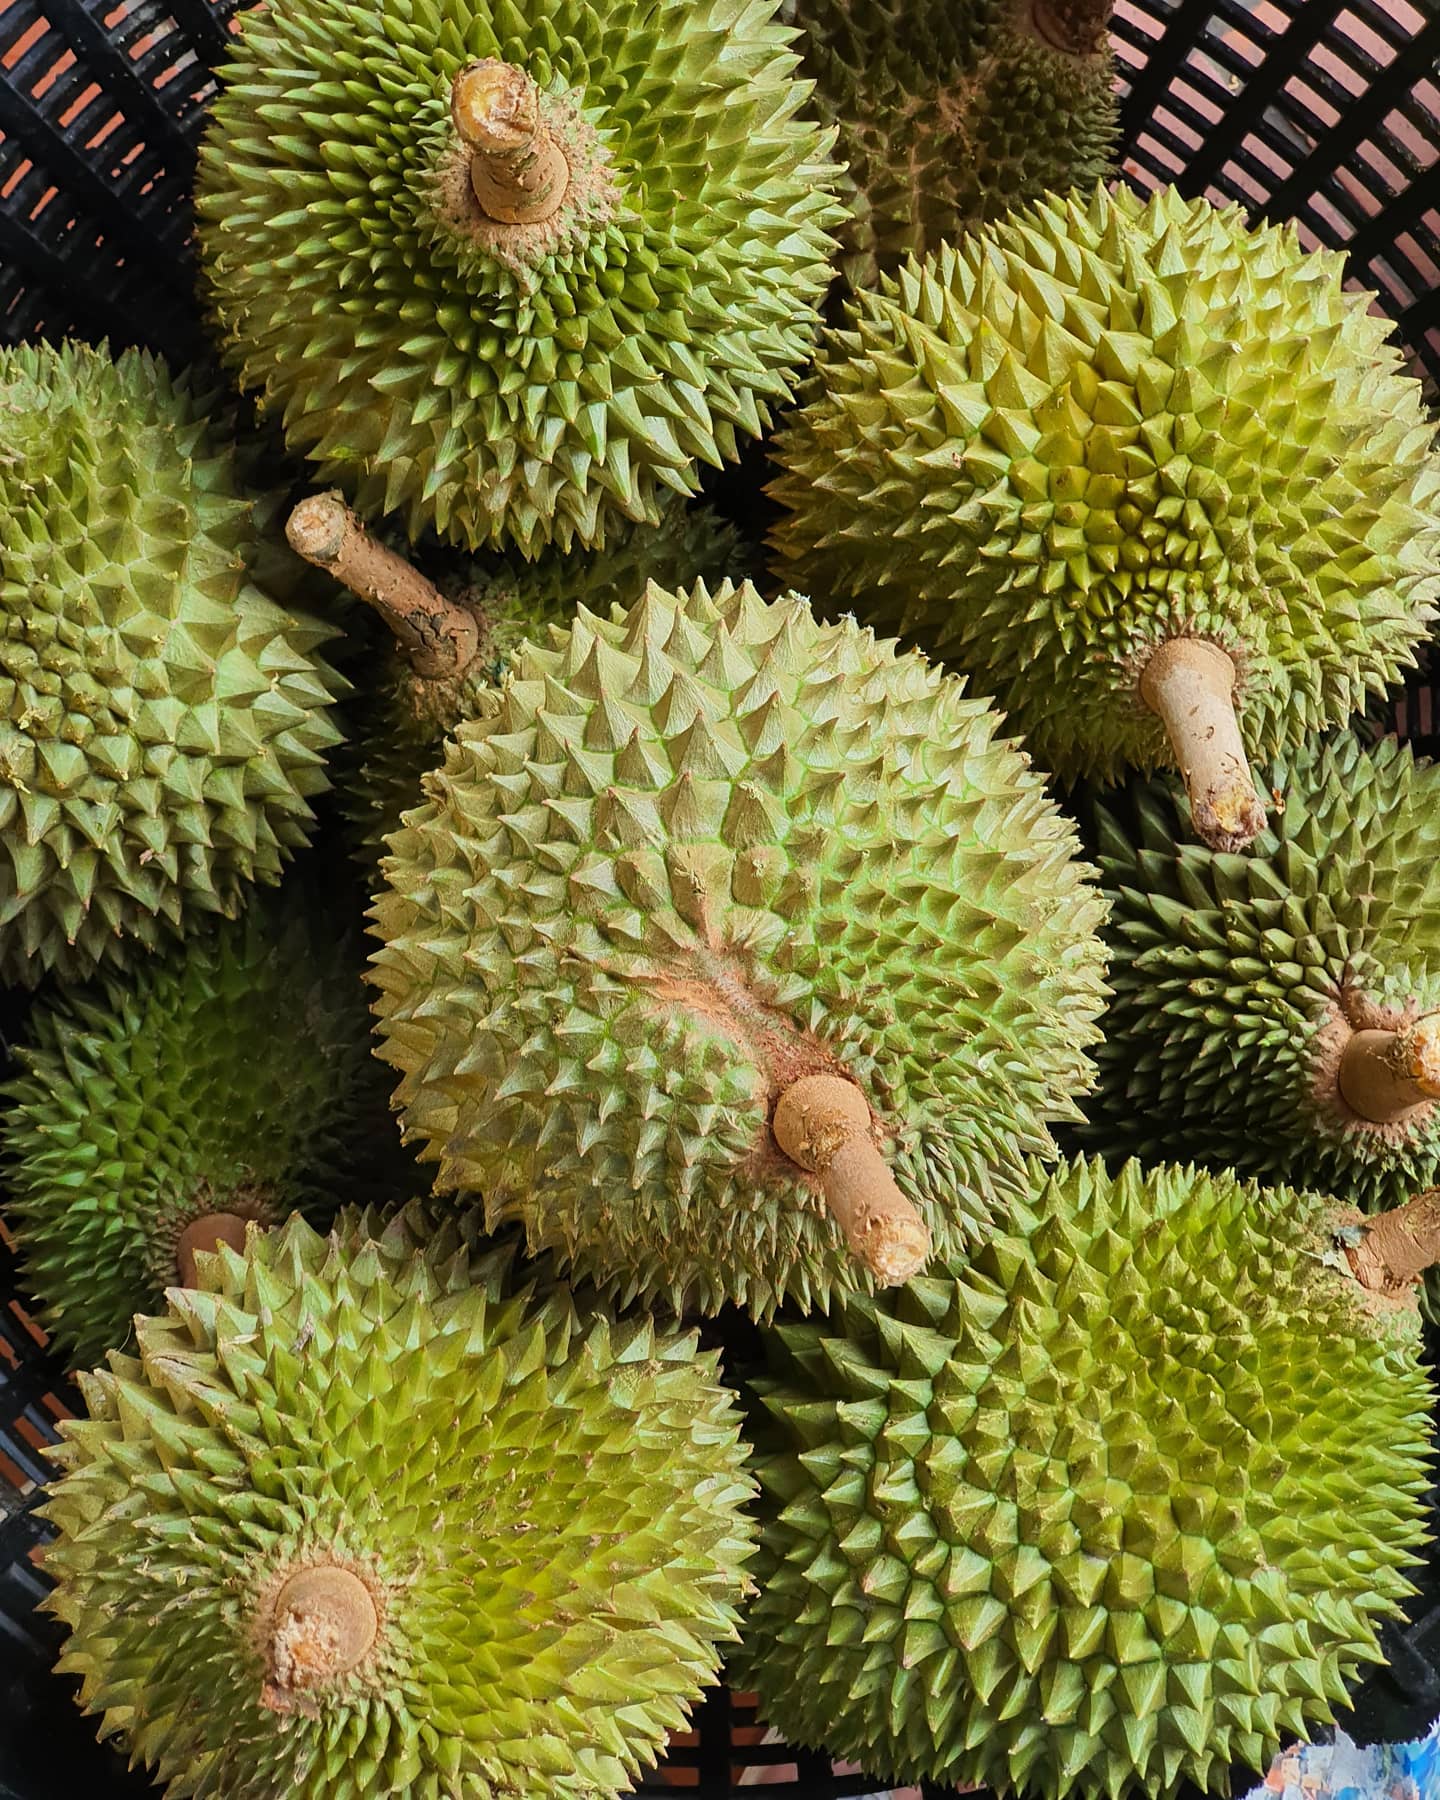 r78-basket-of-durian.jpg